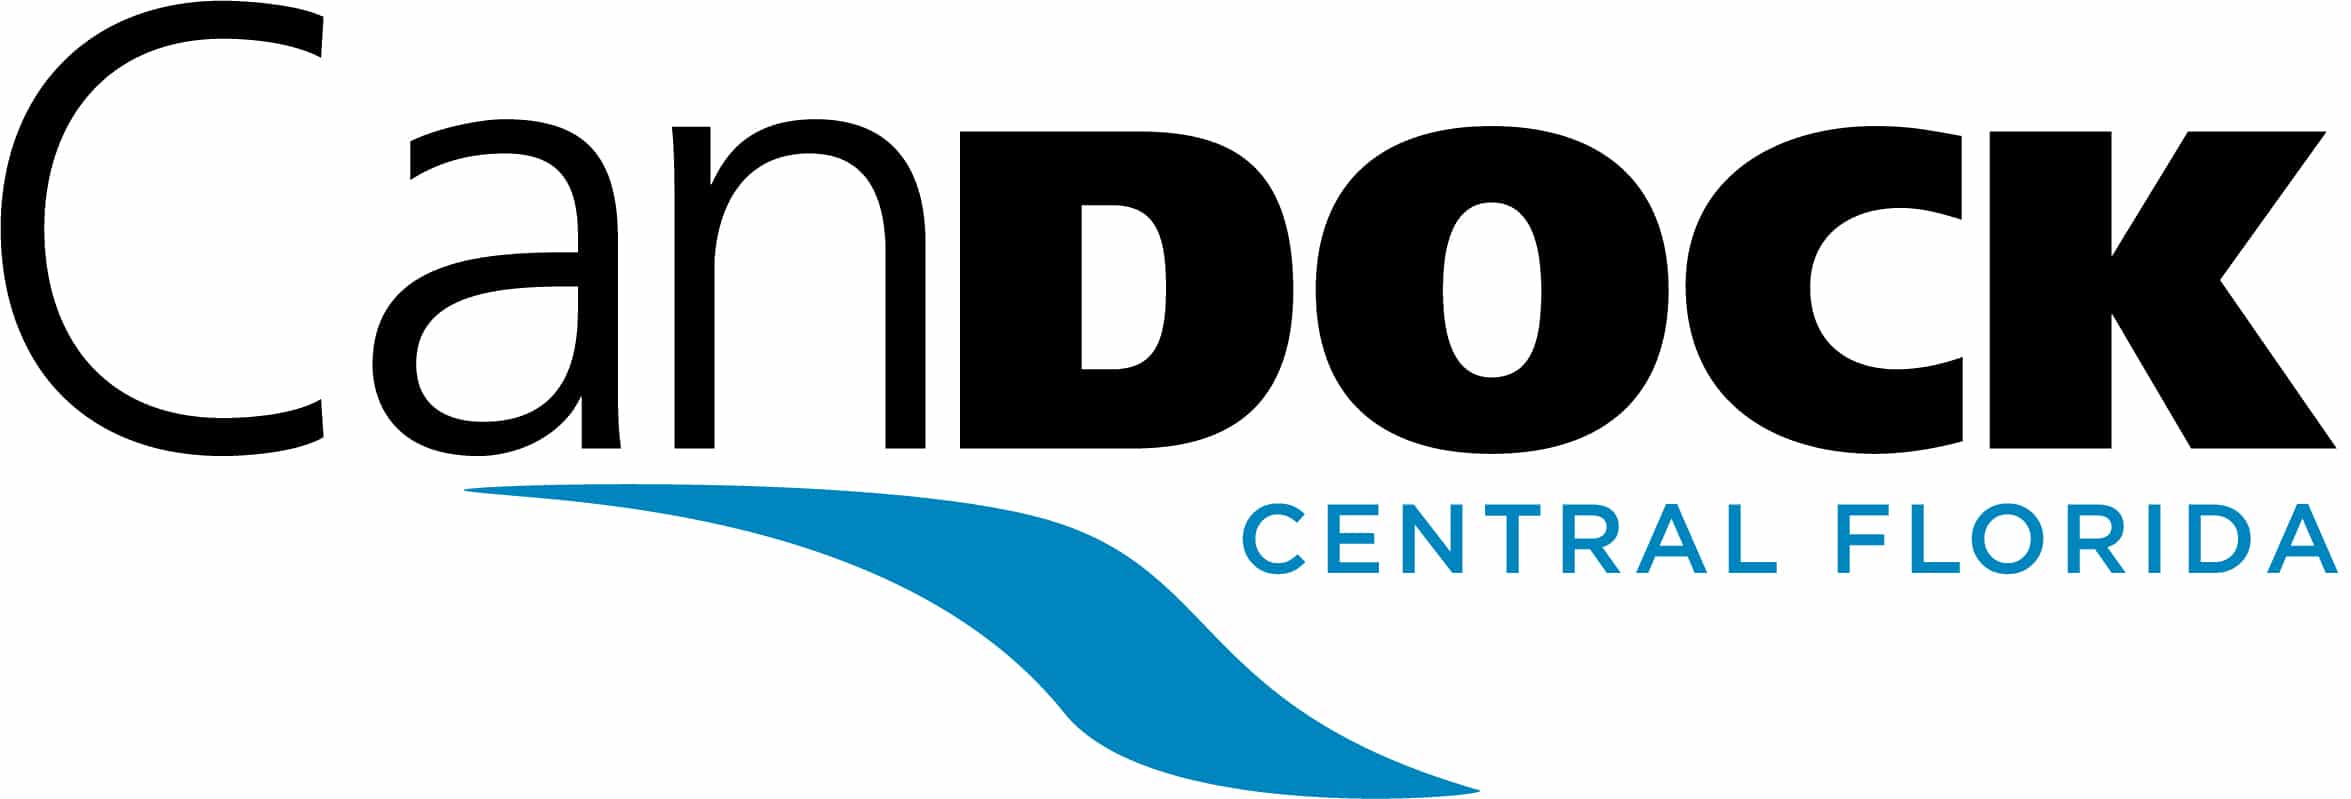 Candock Central Florida Logo